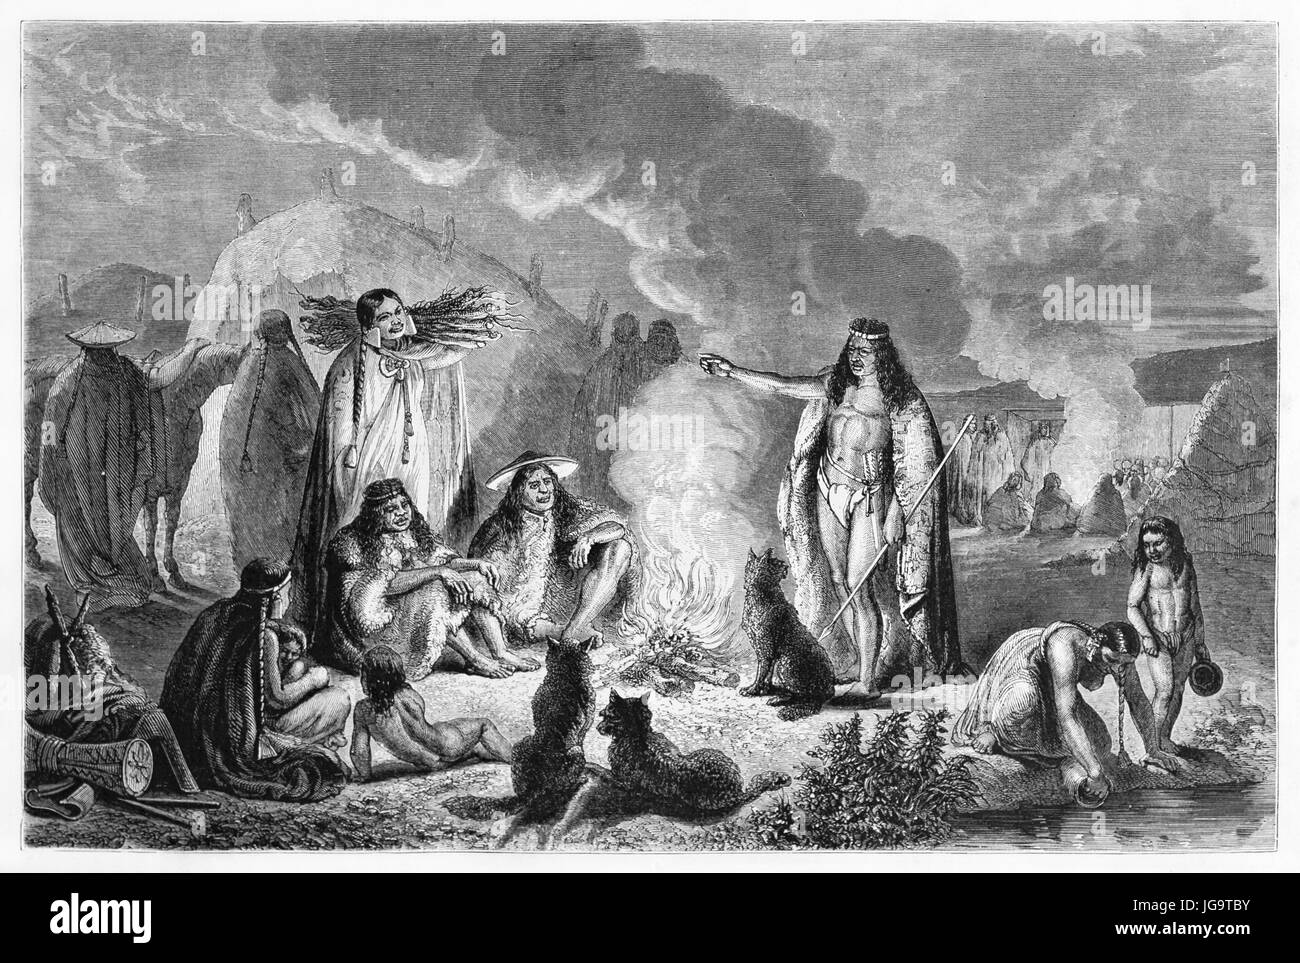 Le peuple Teuelche se tribu autour du feu dans leur camp le soir, Patagonia. Art de style gravure de tons gris antique par Hadamard, publié sur 1861 Banque D'Images